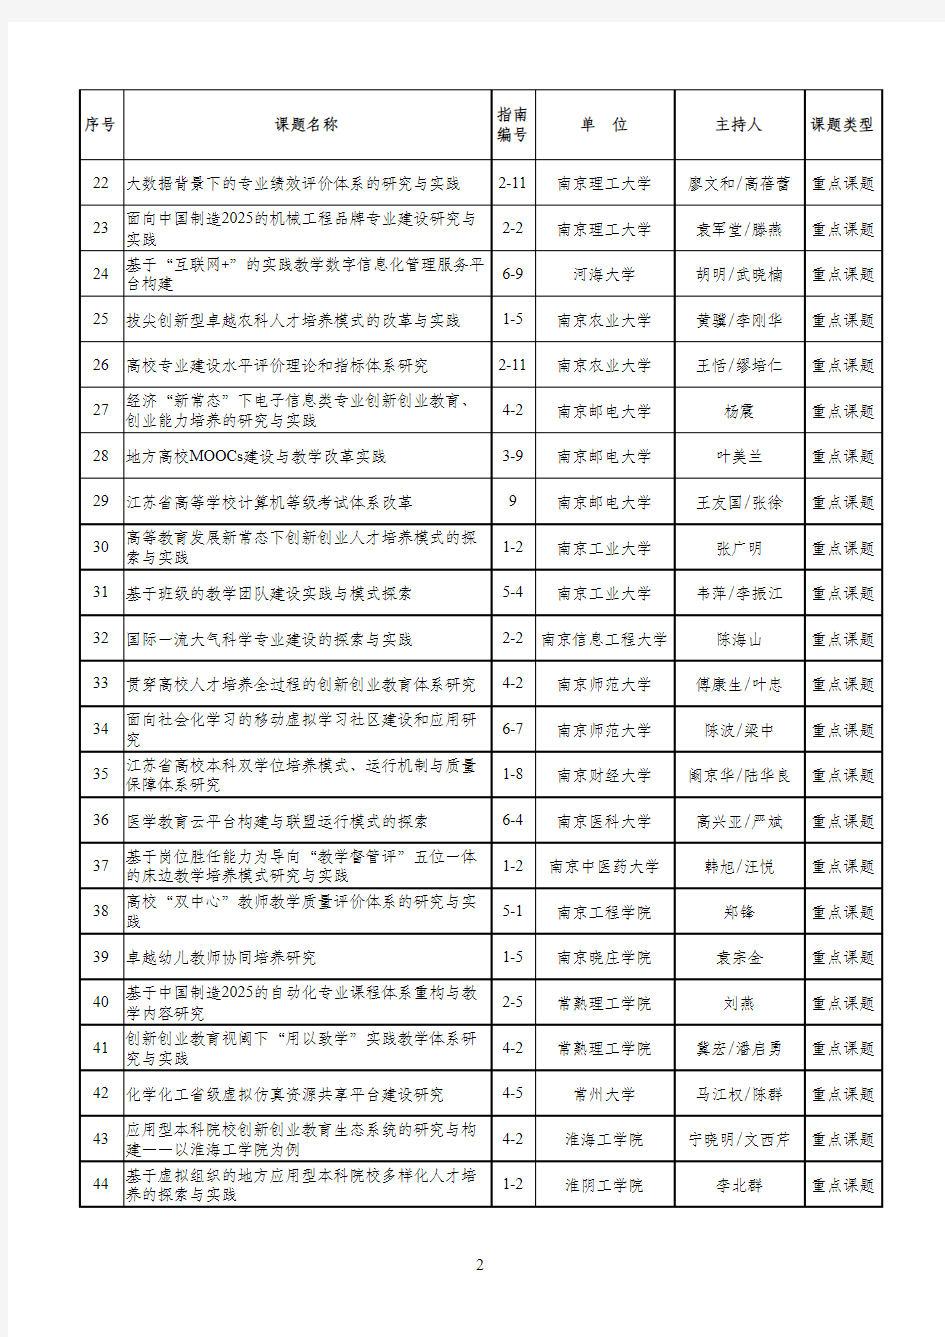 2015年江苏省高等教育教改研究立项课题评选结果